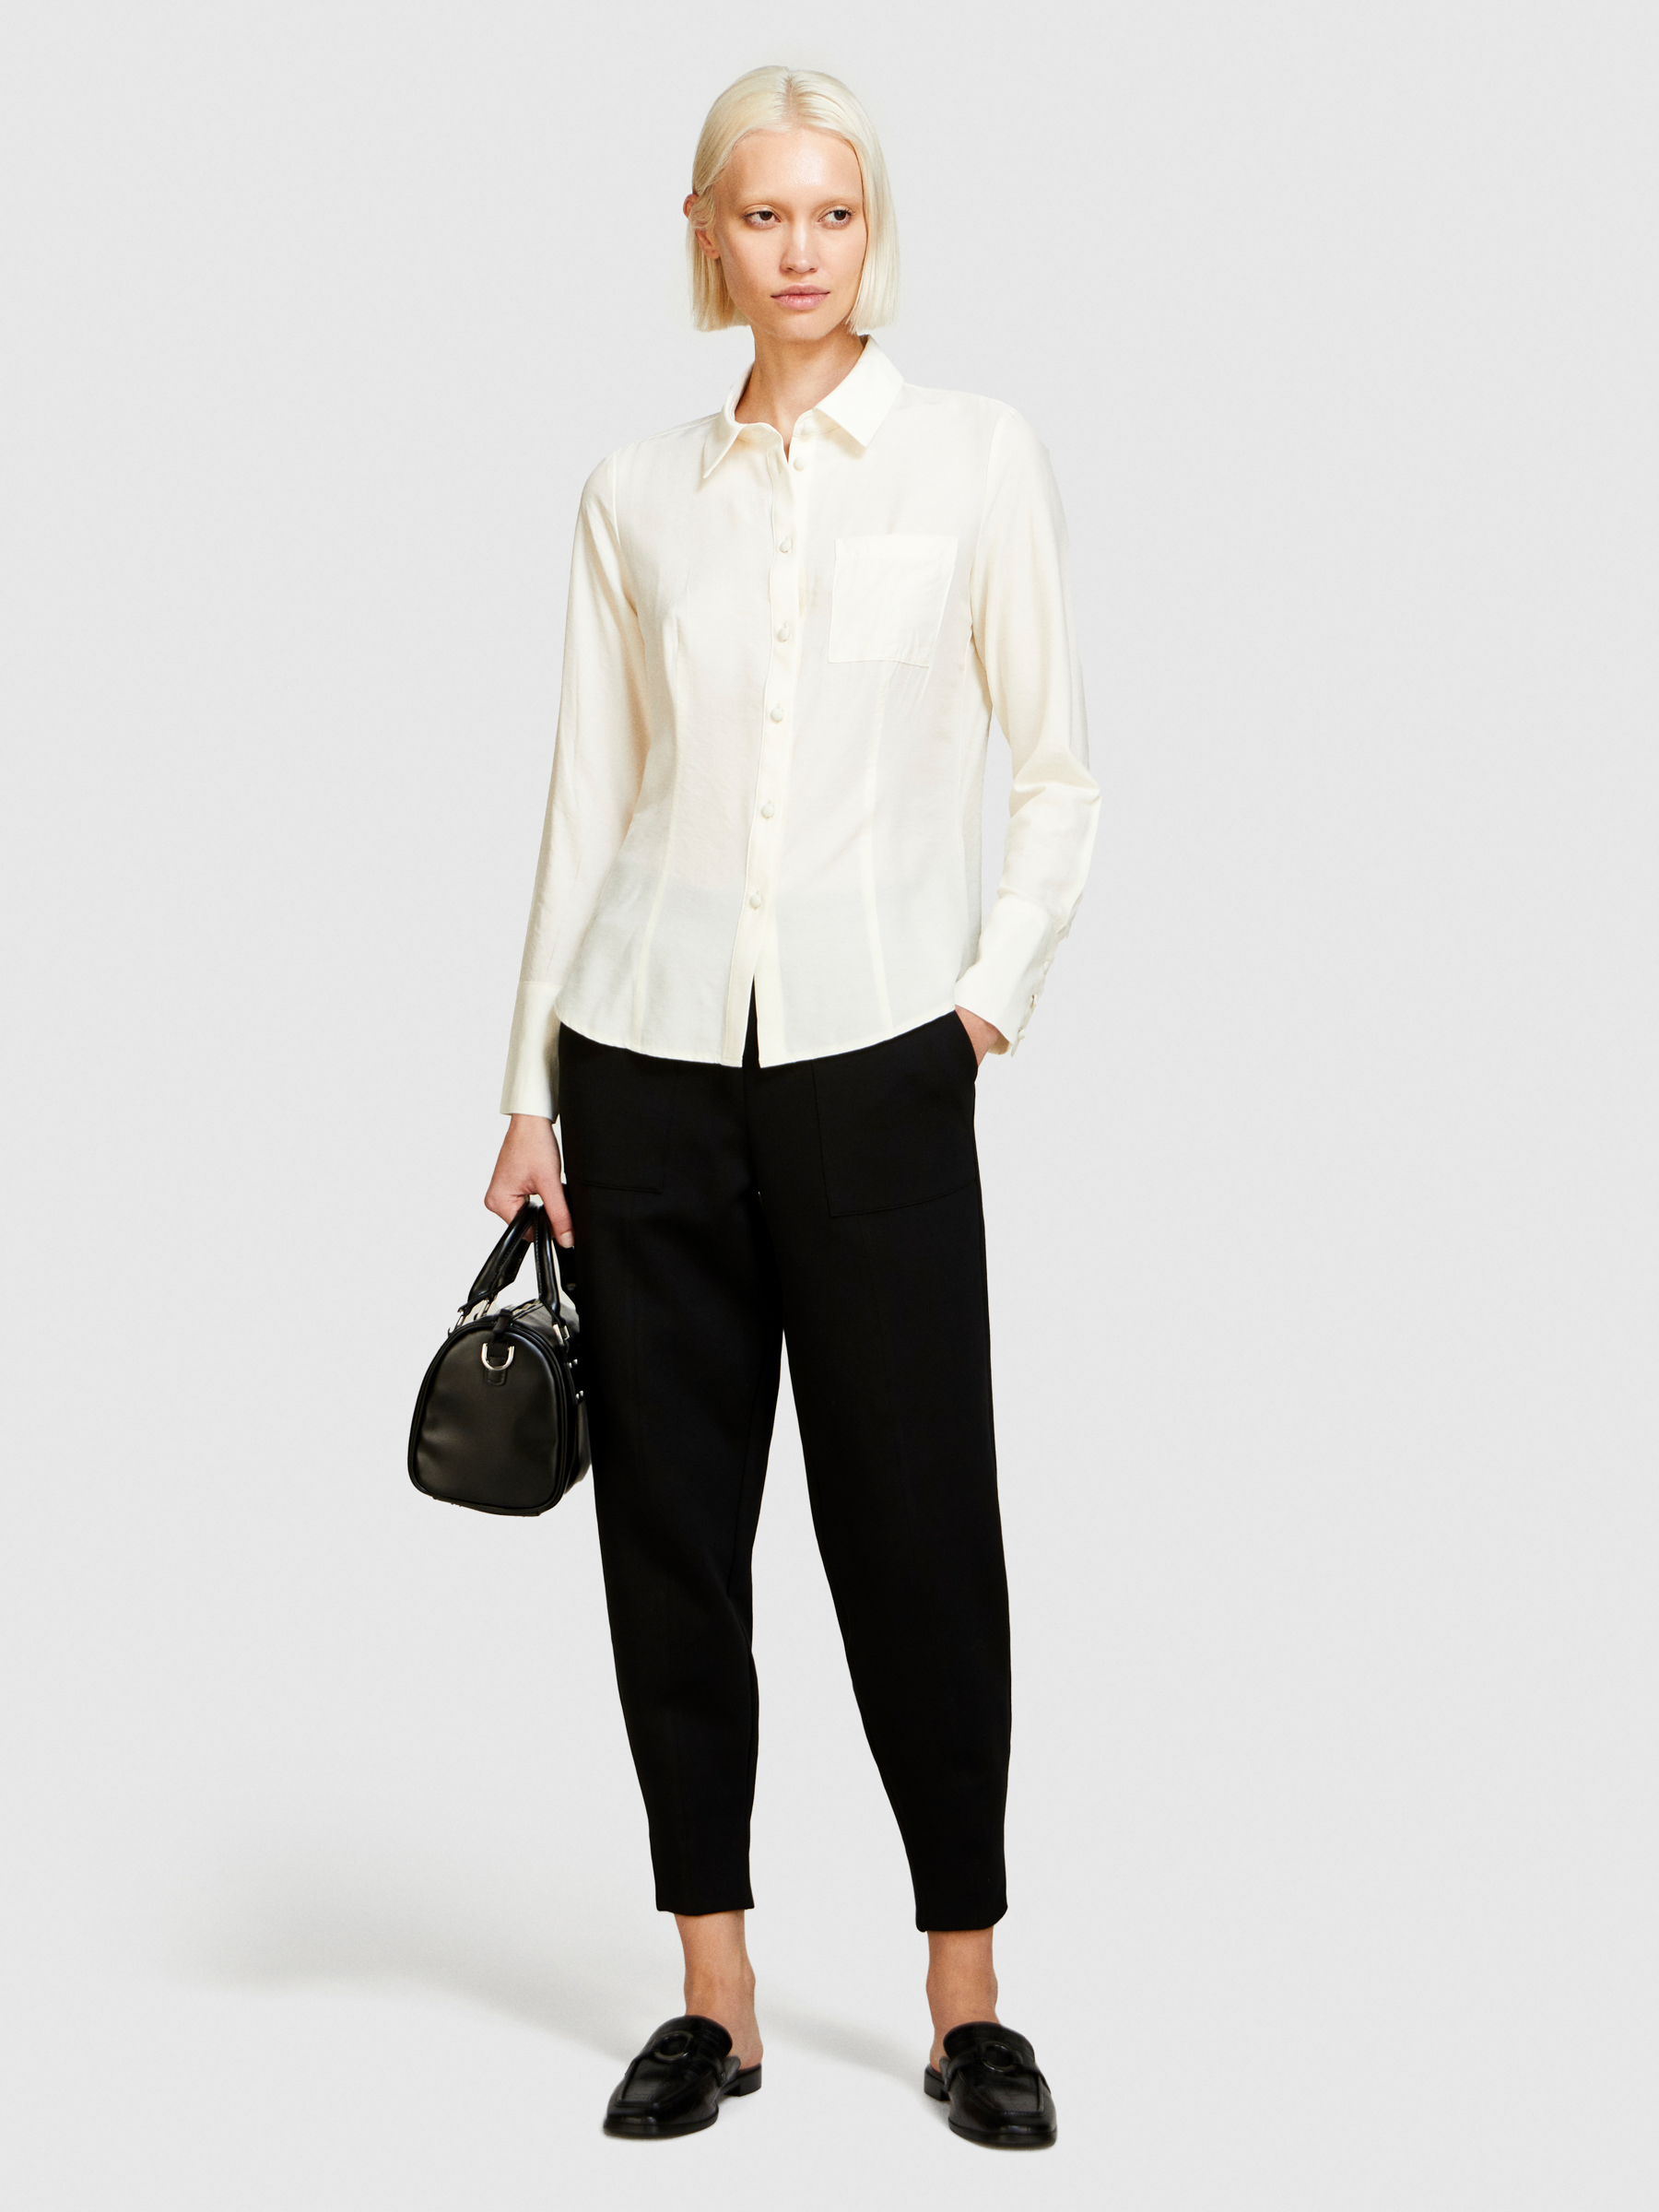 Sisley - Mixed Fabric Shirt, Woman, Creamy White, Size: L